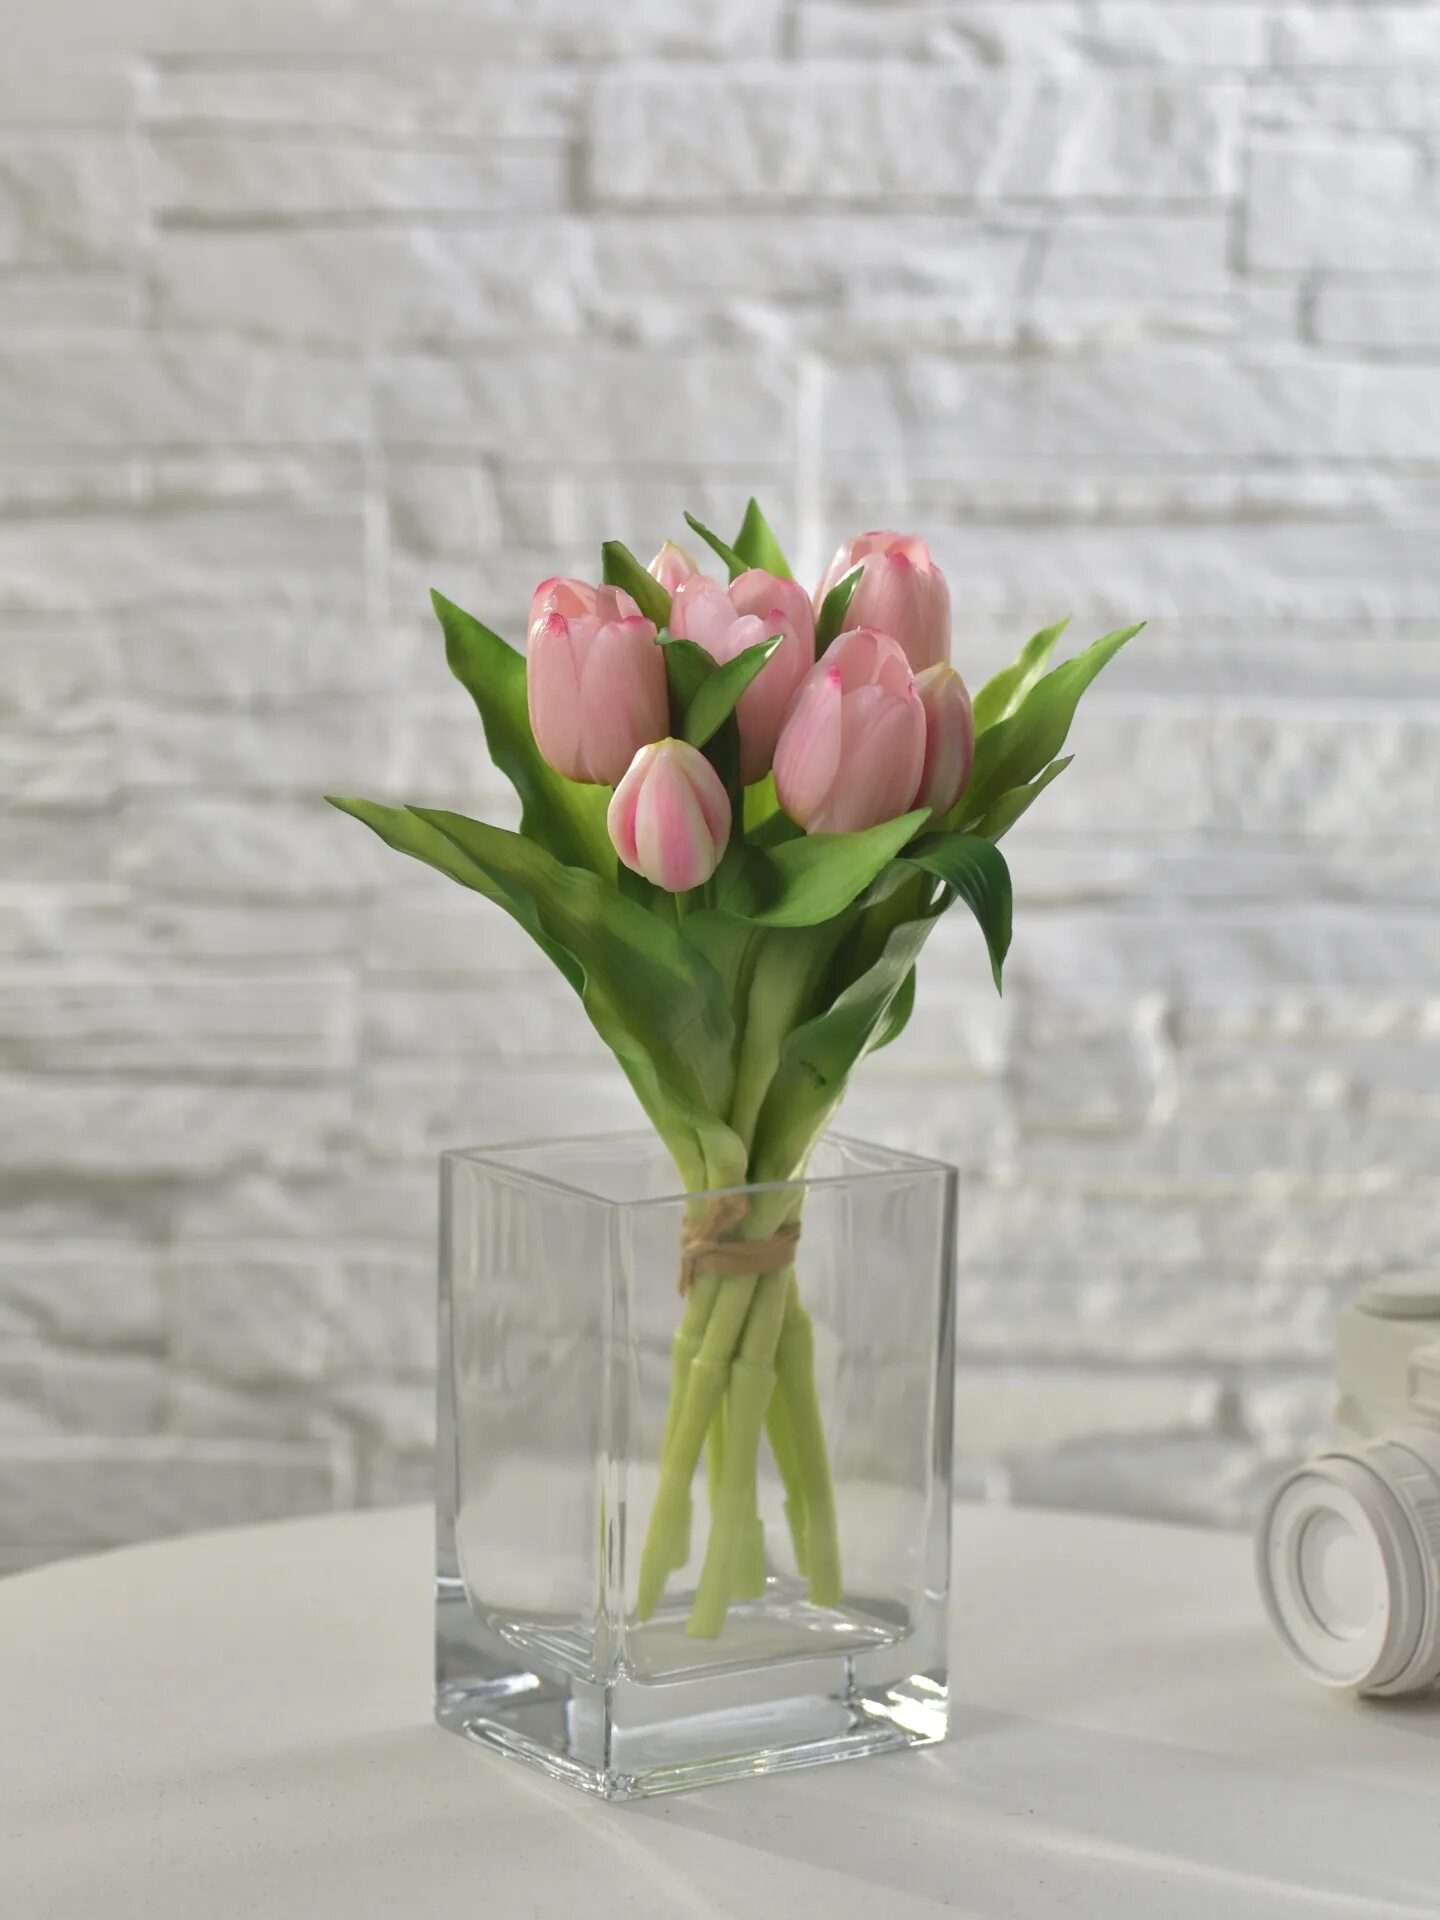 Купить тюльпаны в леруа мерлен. Искусственные тюльпаны в интерьере. Искусственные тюльпаны в подставке. Тюльпаны в Леруа. Цветы французские искусственные тюльпаны.